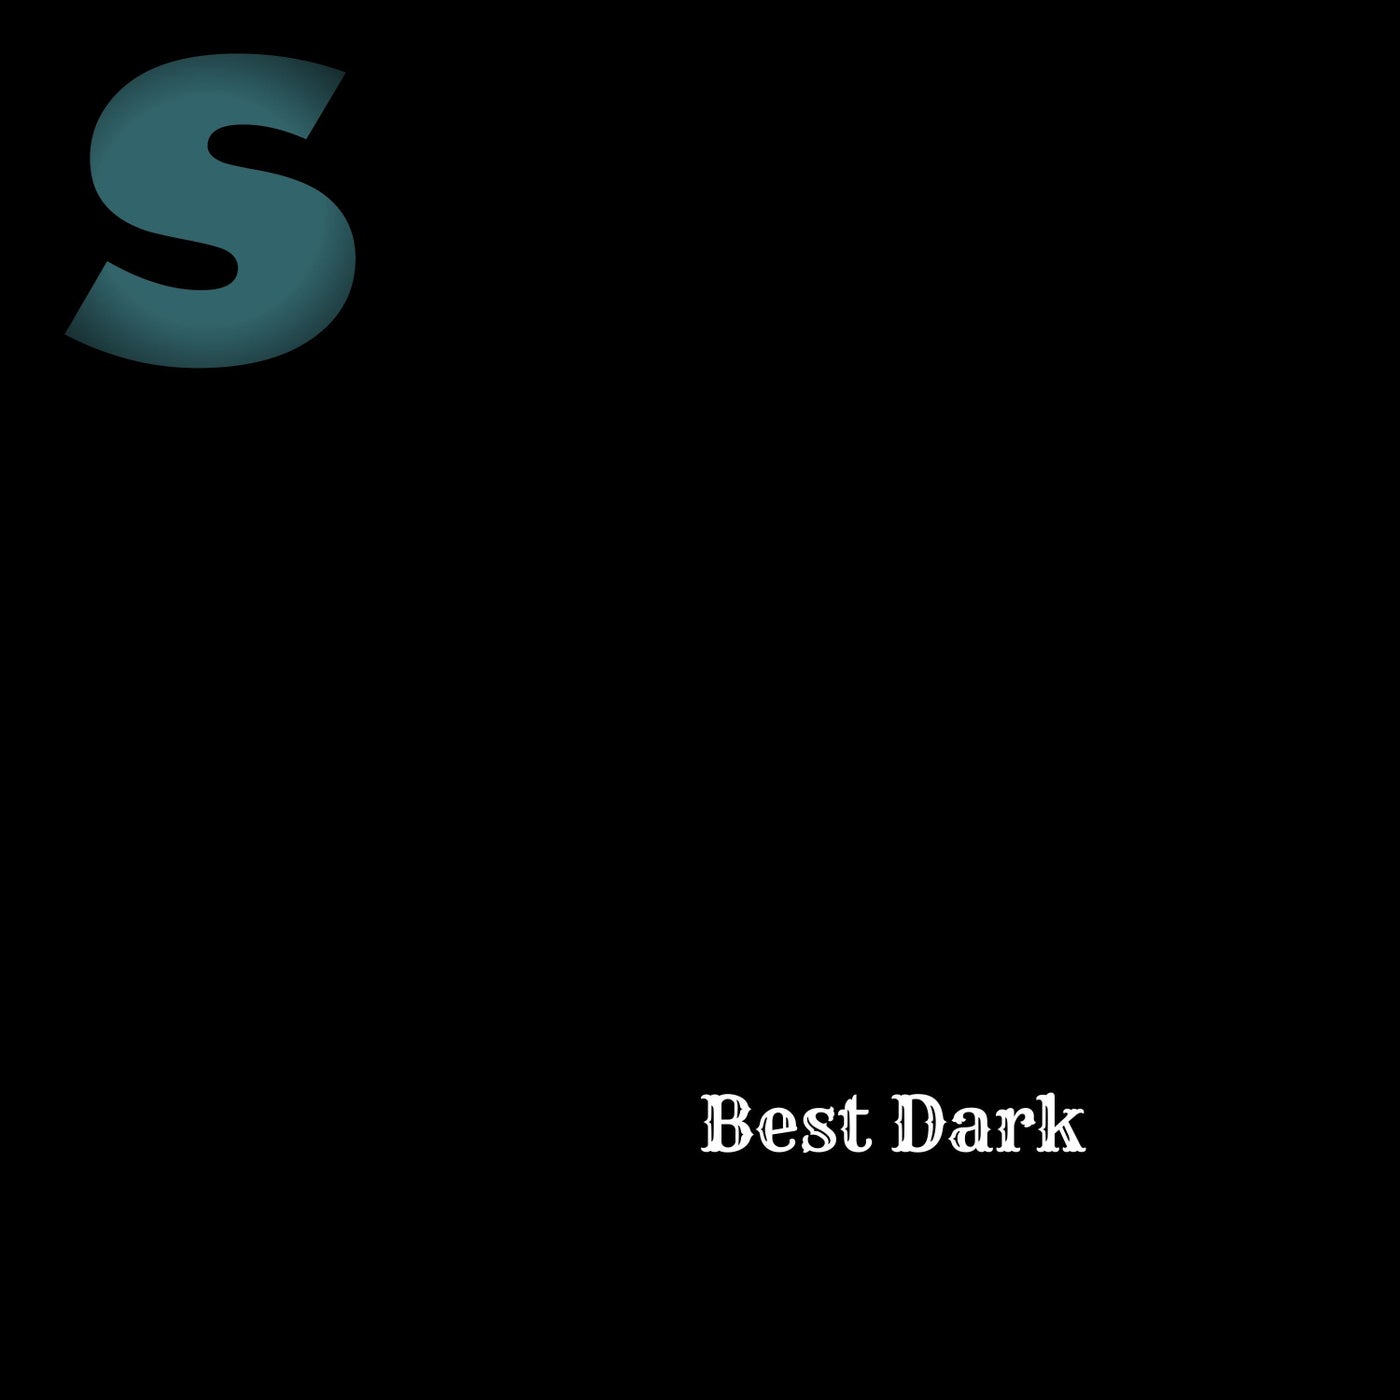 Best Dark